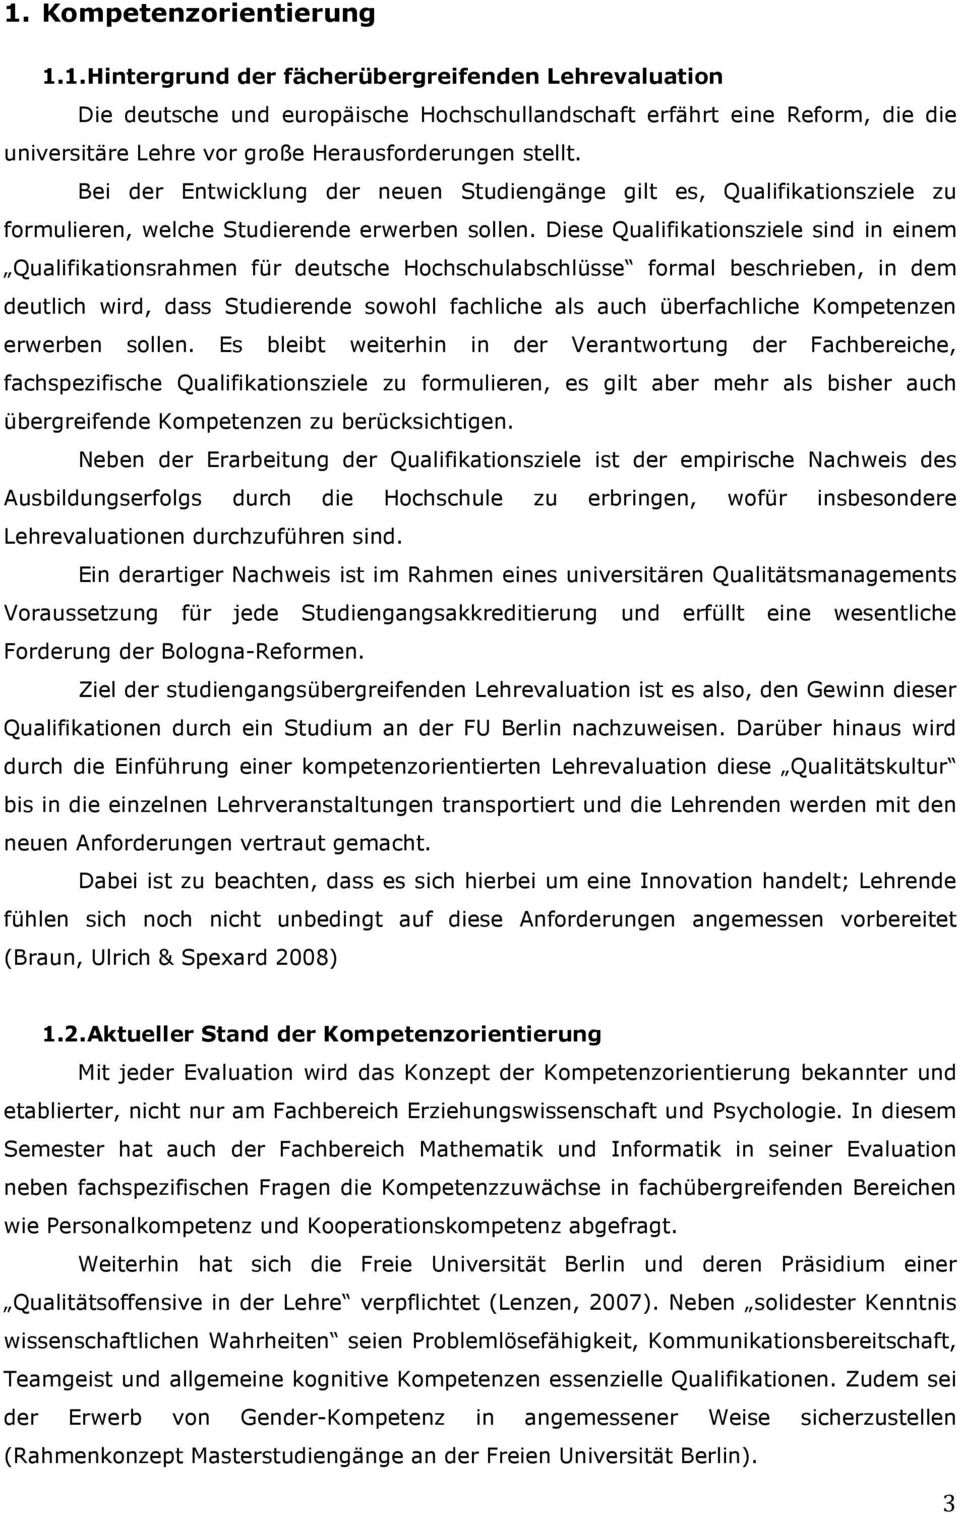 Diese Qualifikationsziele sind in einem Qualifikationsrahmen für deutsche Hochschulabschlüsse formal beschrieben, in dem deutlich wird, dass Studierende sowohl fachliche als auch überfachliche